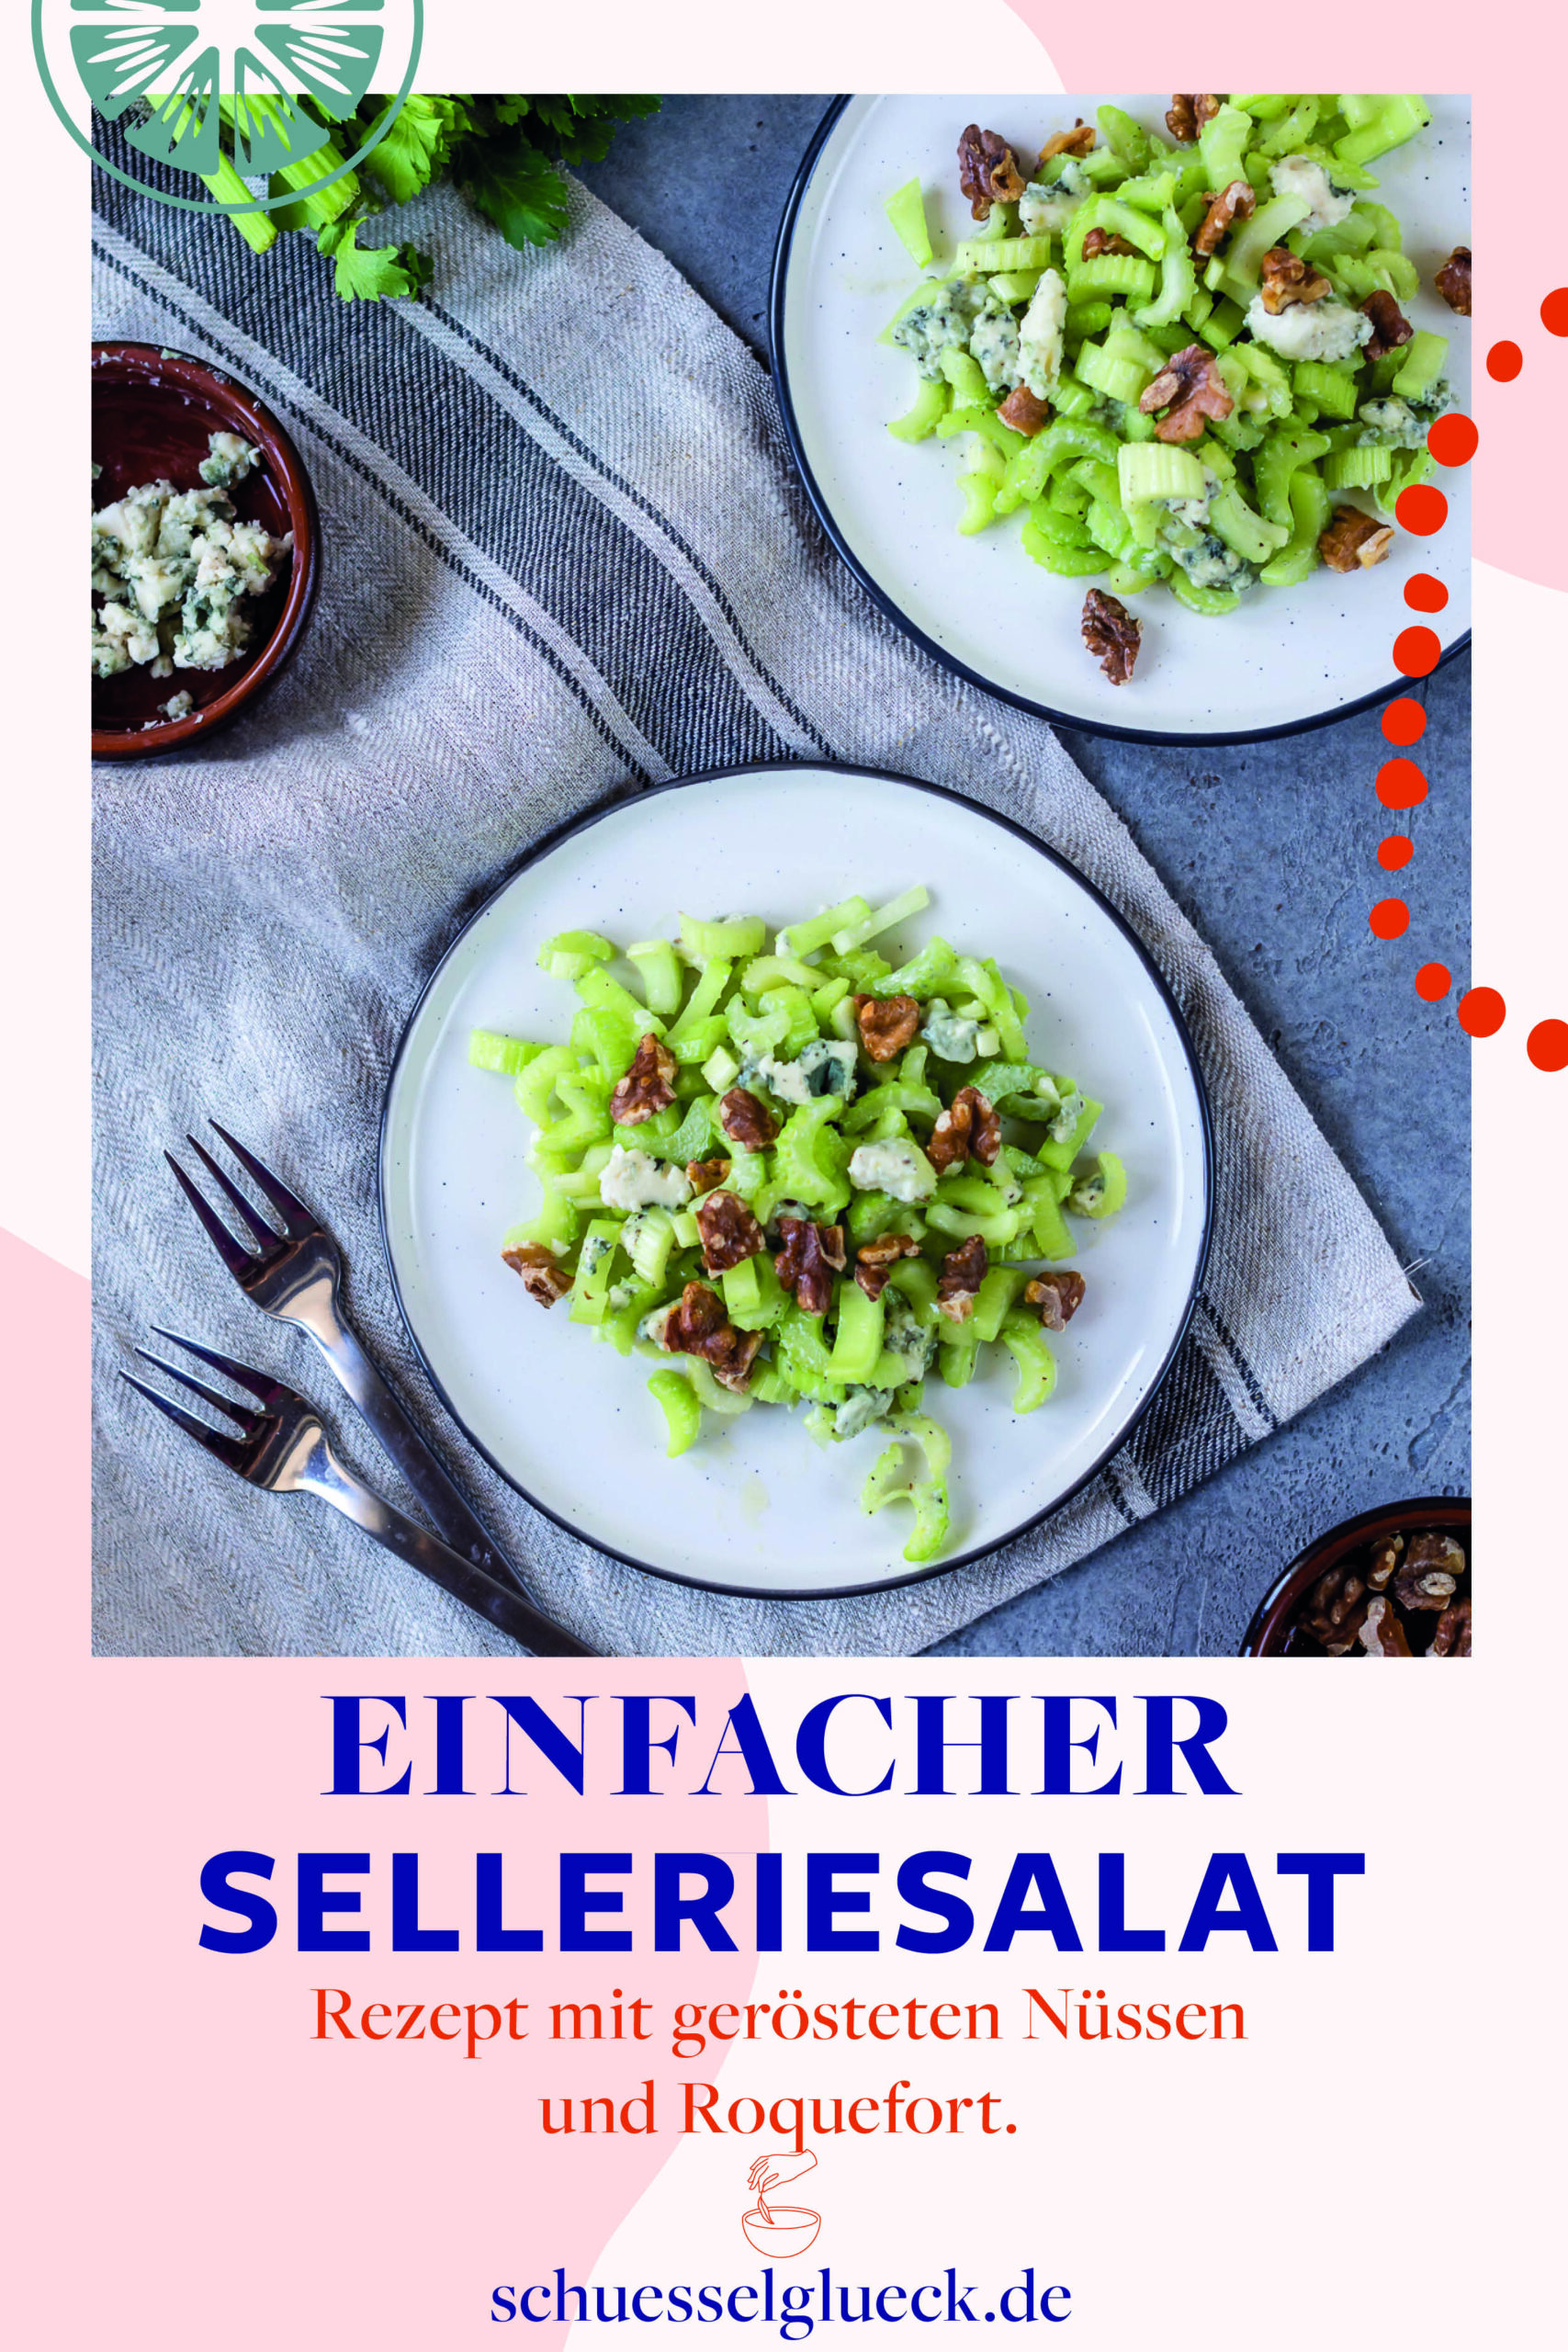 Knallfrischer Selleriesalat mit gerösteten Nüssen & Roquefort